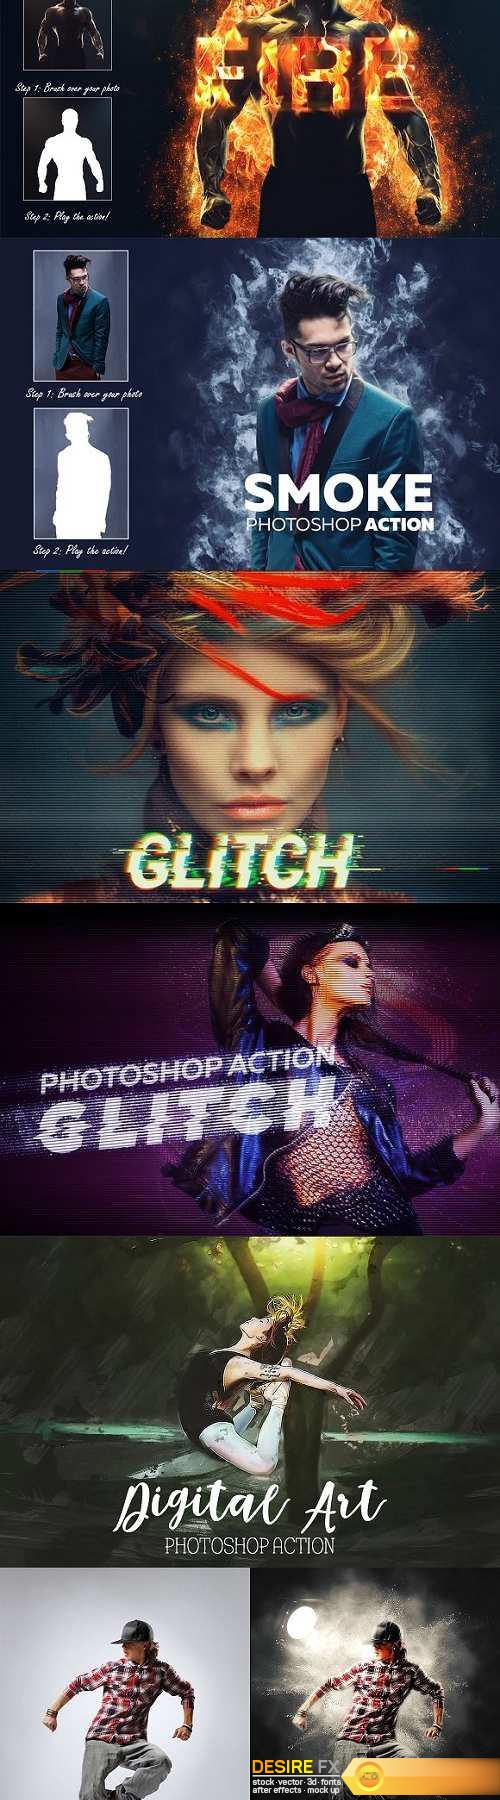 Artistic Photoshop - Actions Bundle - 1595427